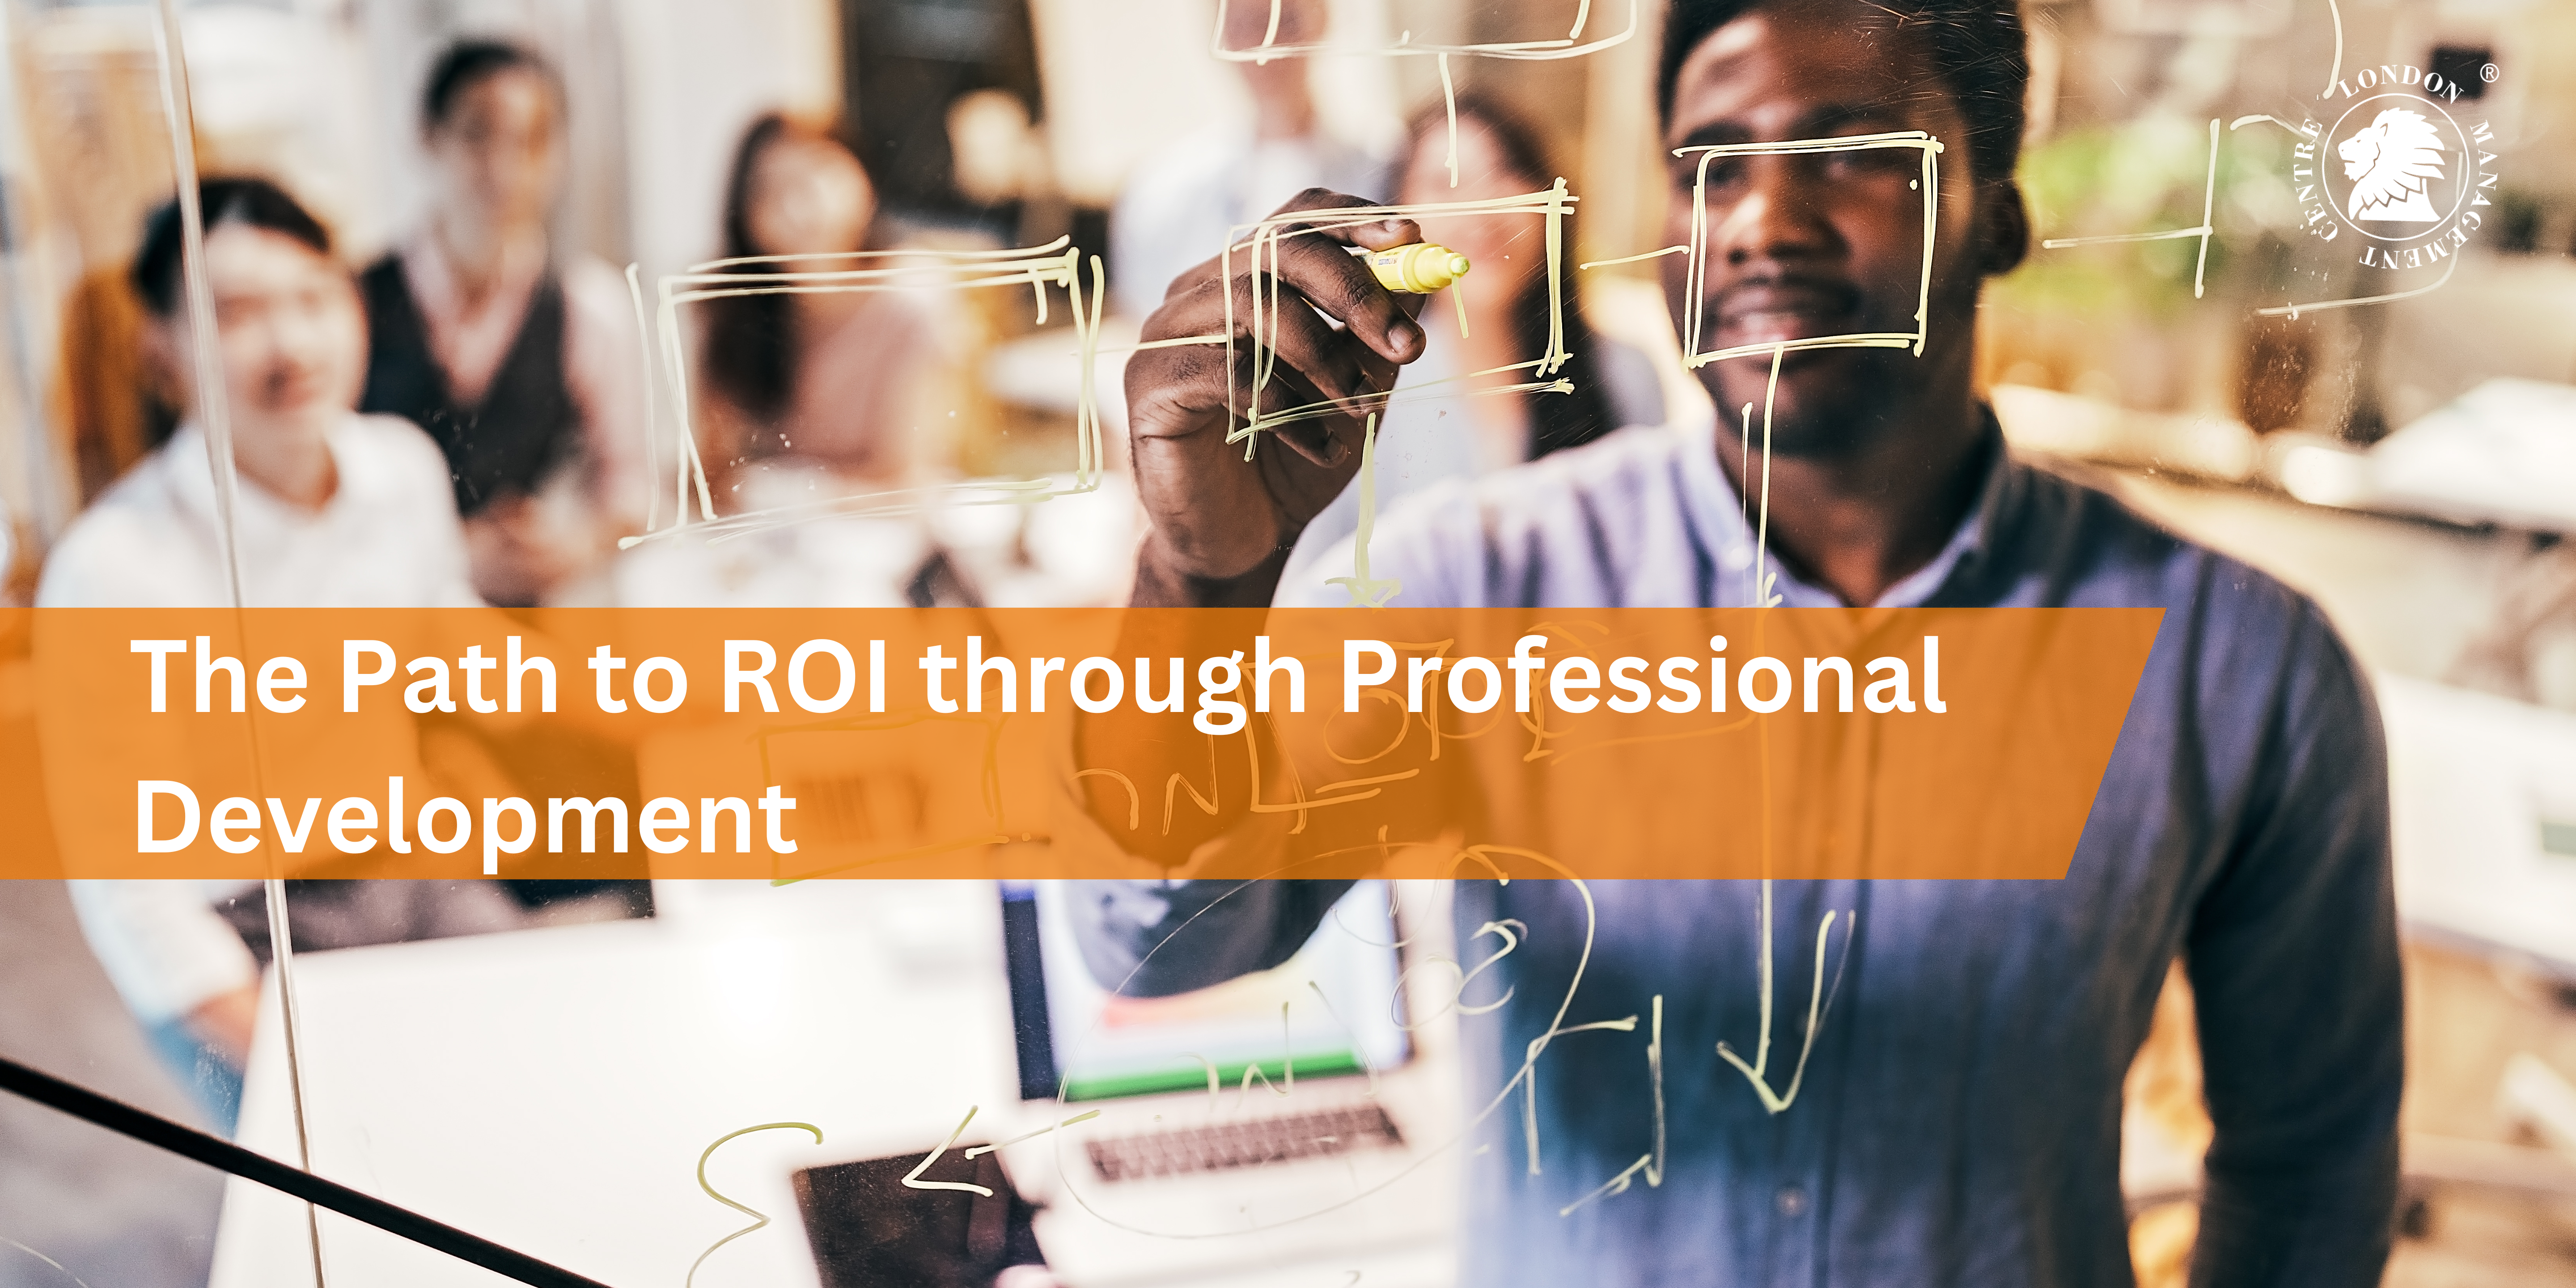 The Path to ROI through Professional Development